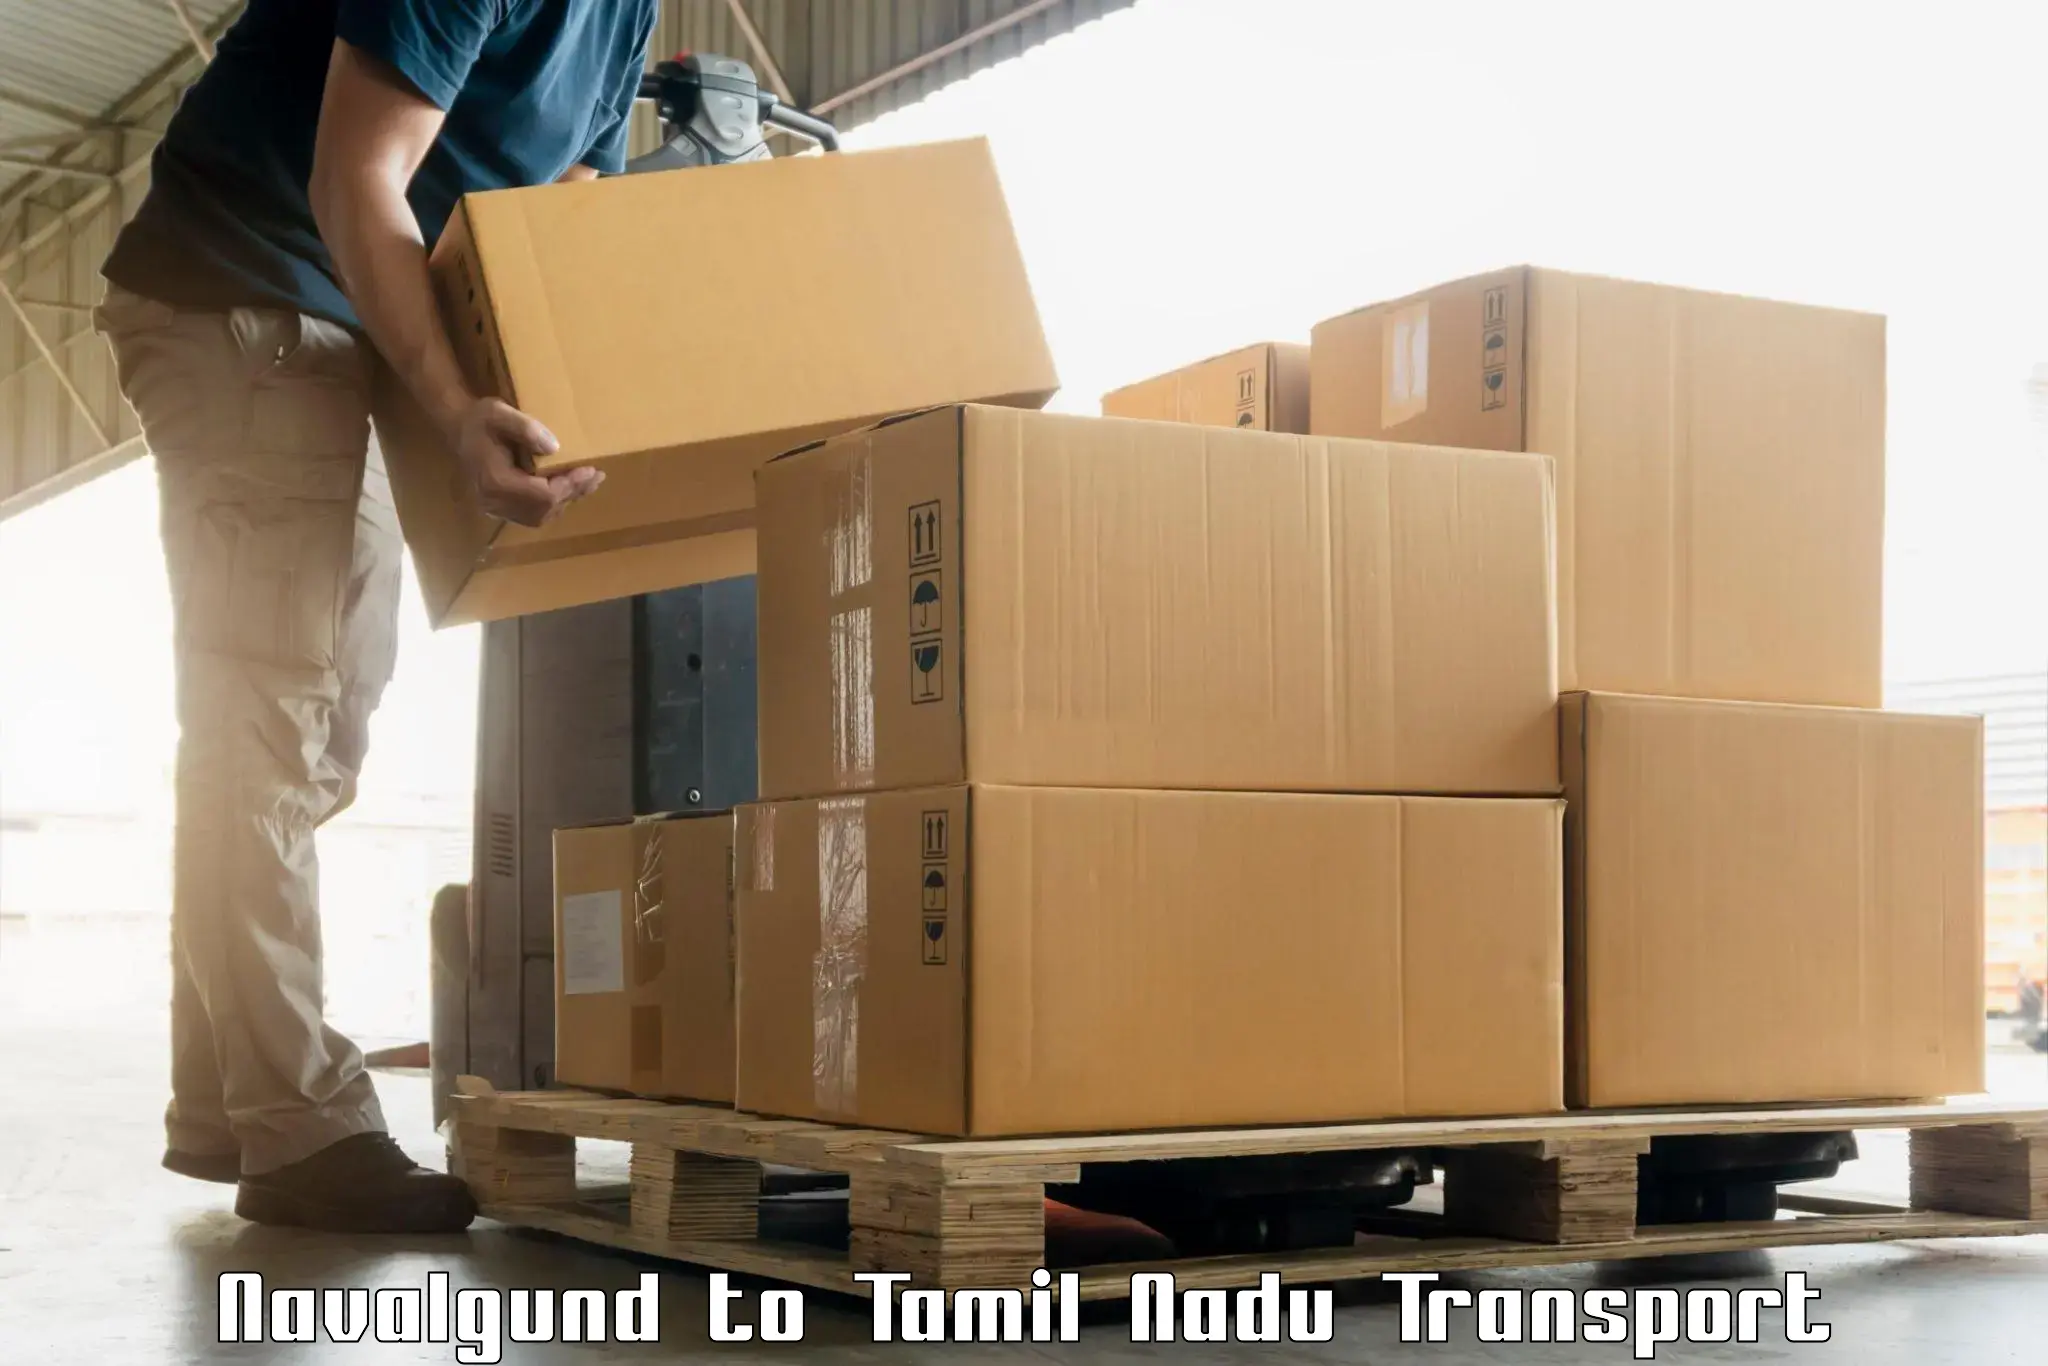 Luggage transport services Navalgund to Polur